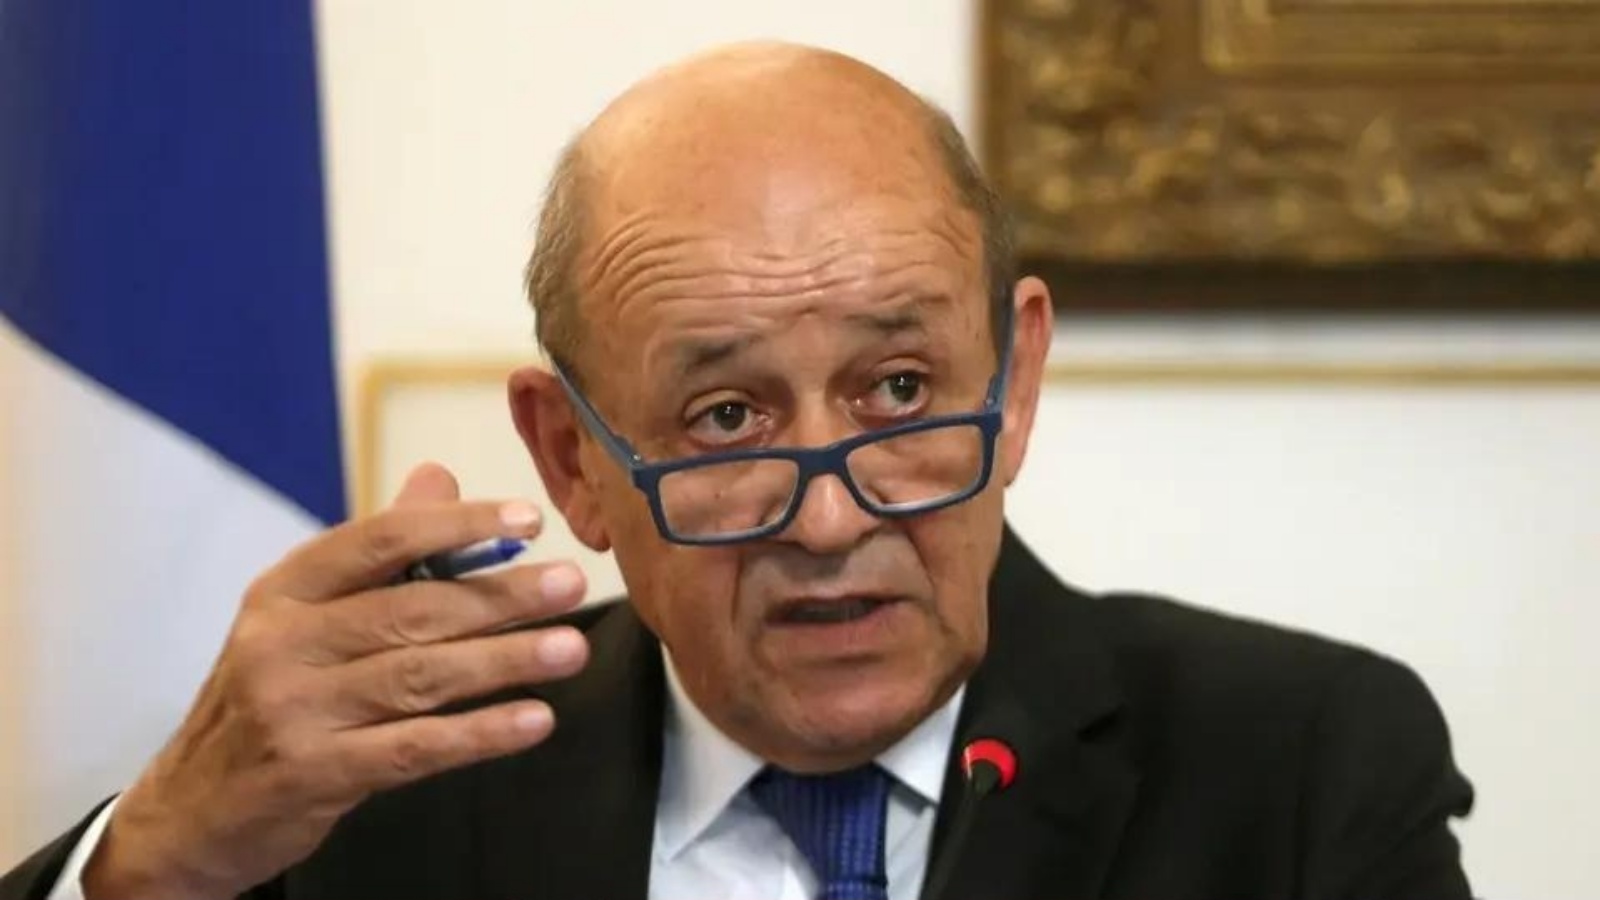 وزير خارجية فرنسا بالرباط الاثنين وقضية الهجرة في صدارة مباحثاته